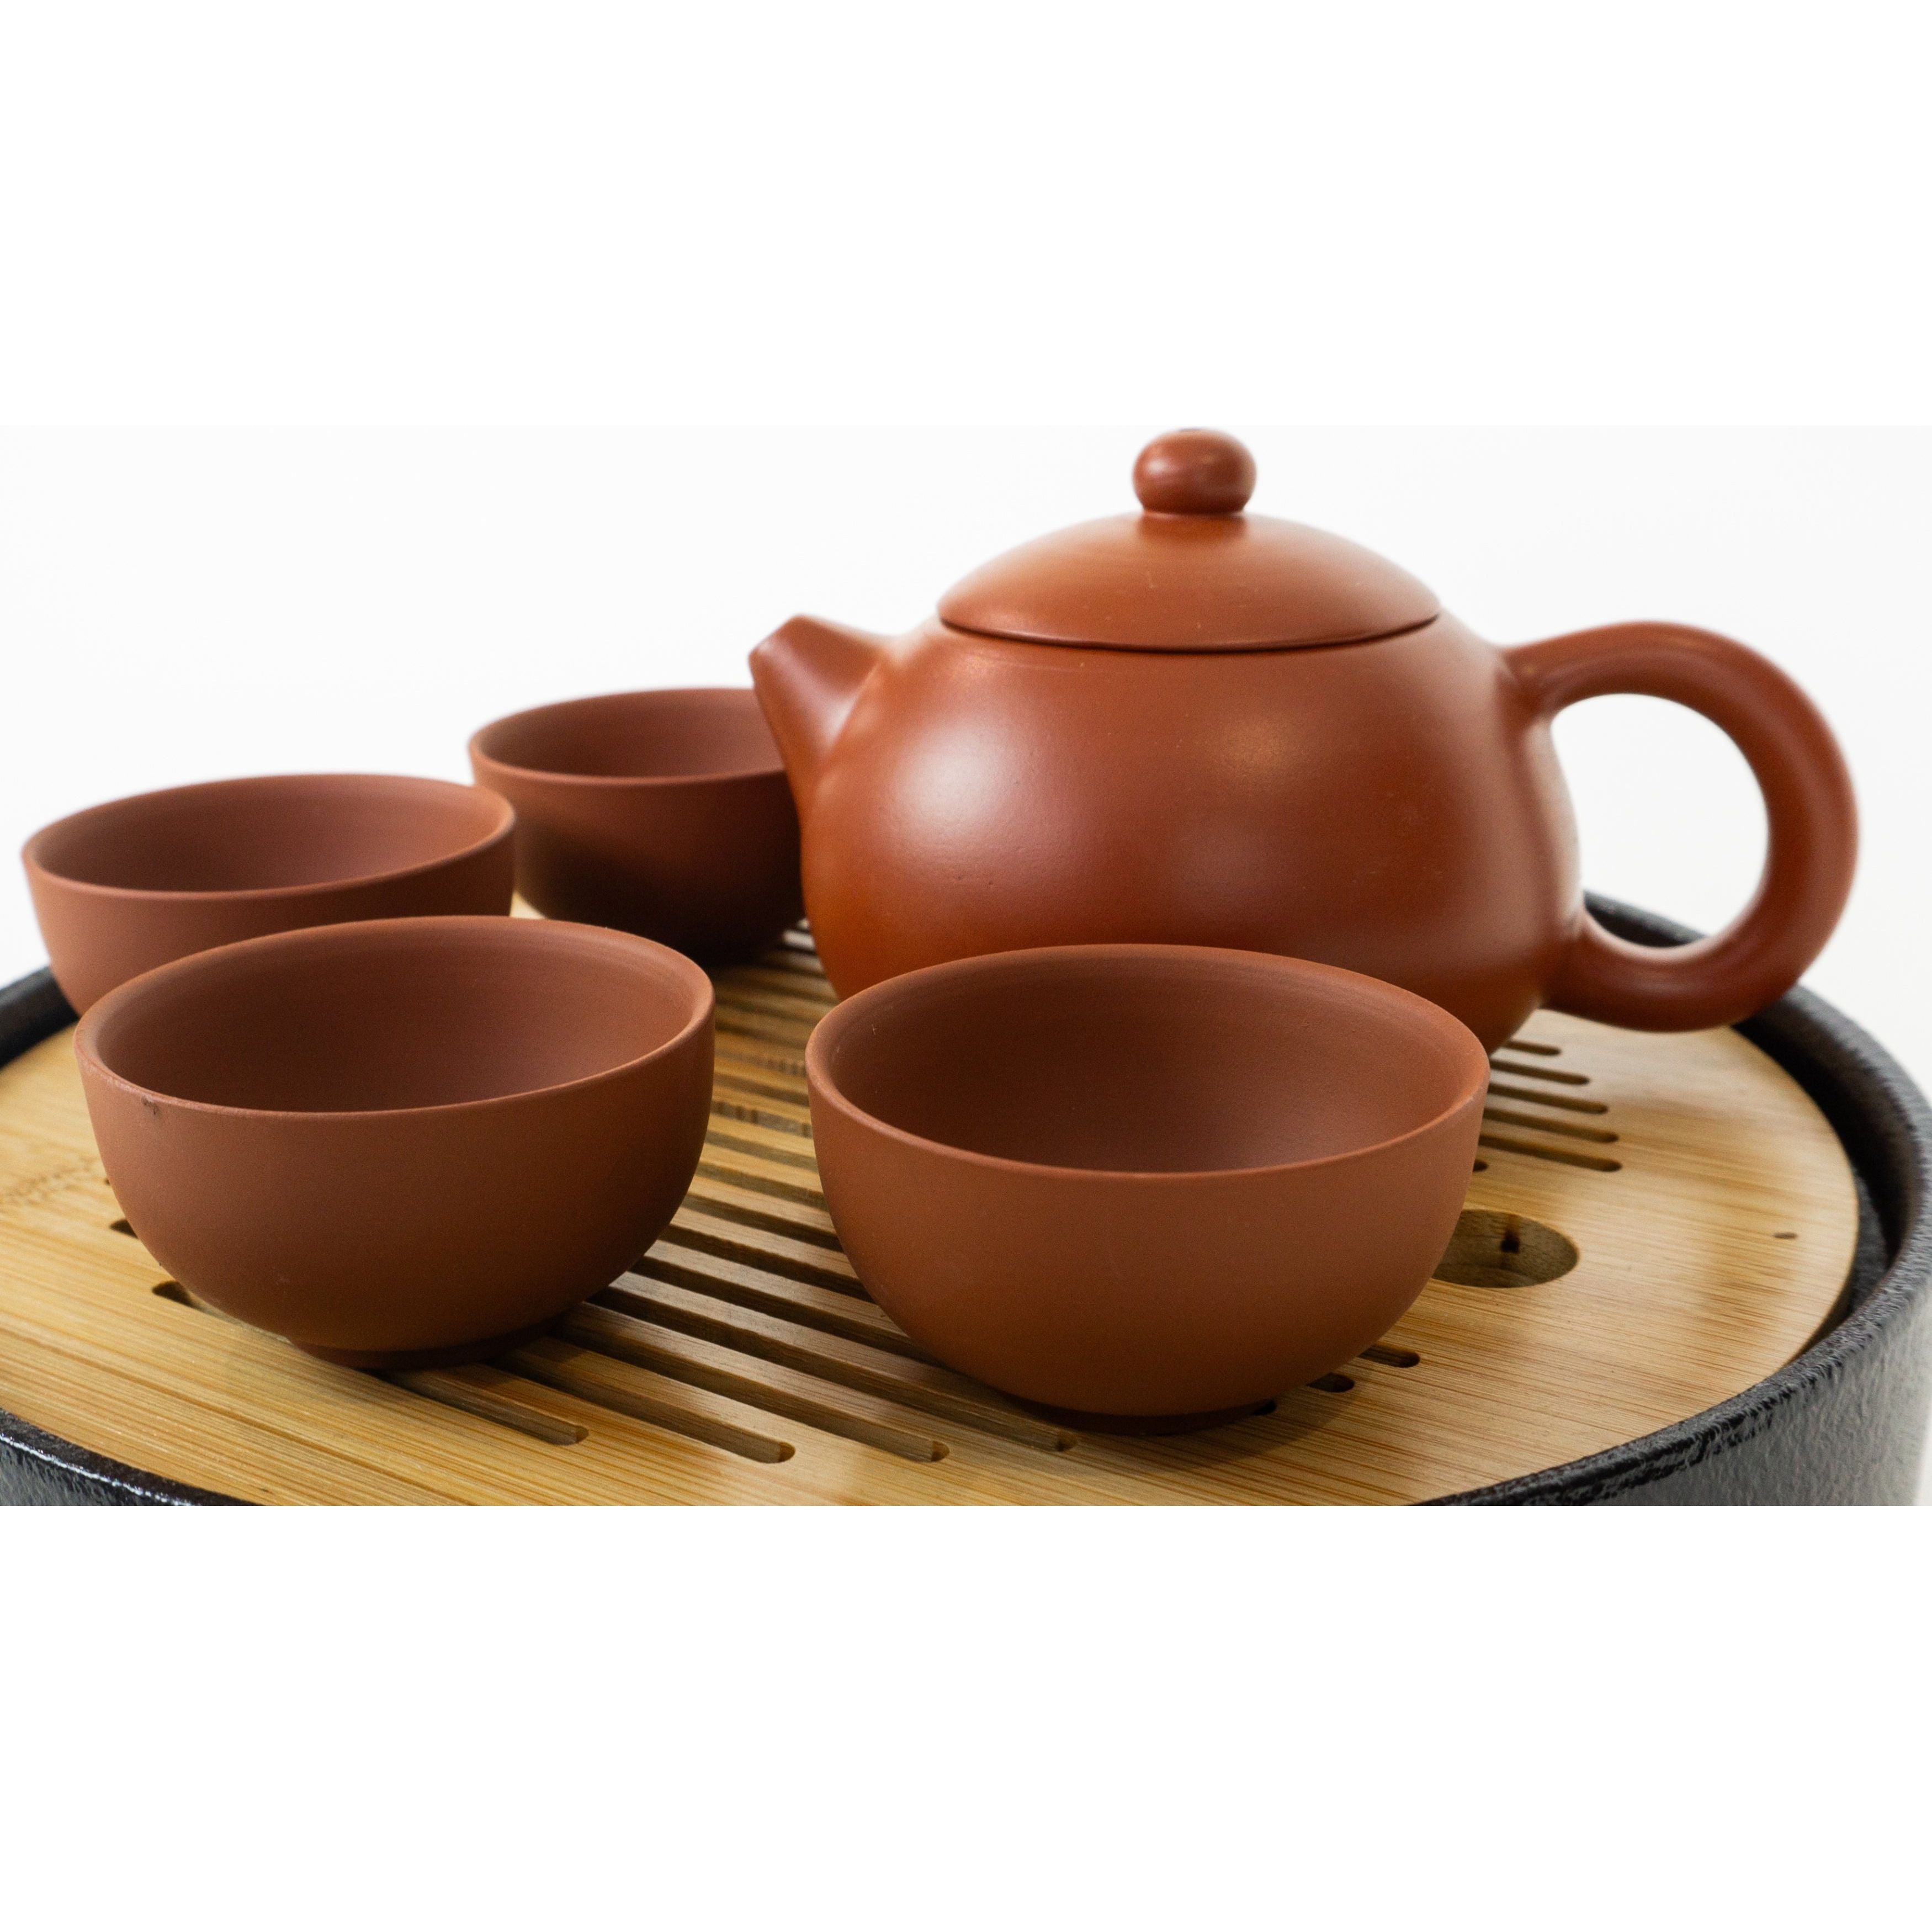 Ensemble de cérémonie du thé, couvercle de théière en forme de dôme brun rougeâtre Yixing, 4 tasses